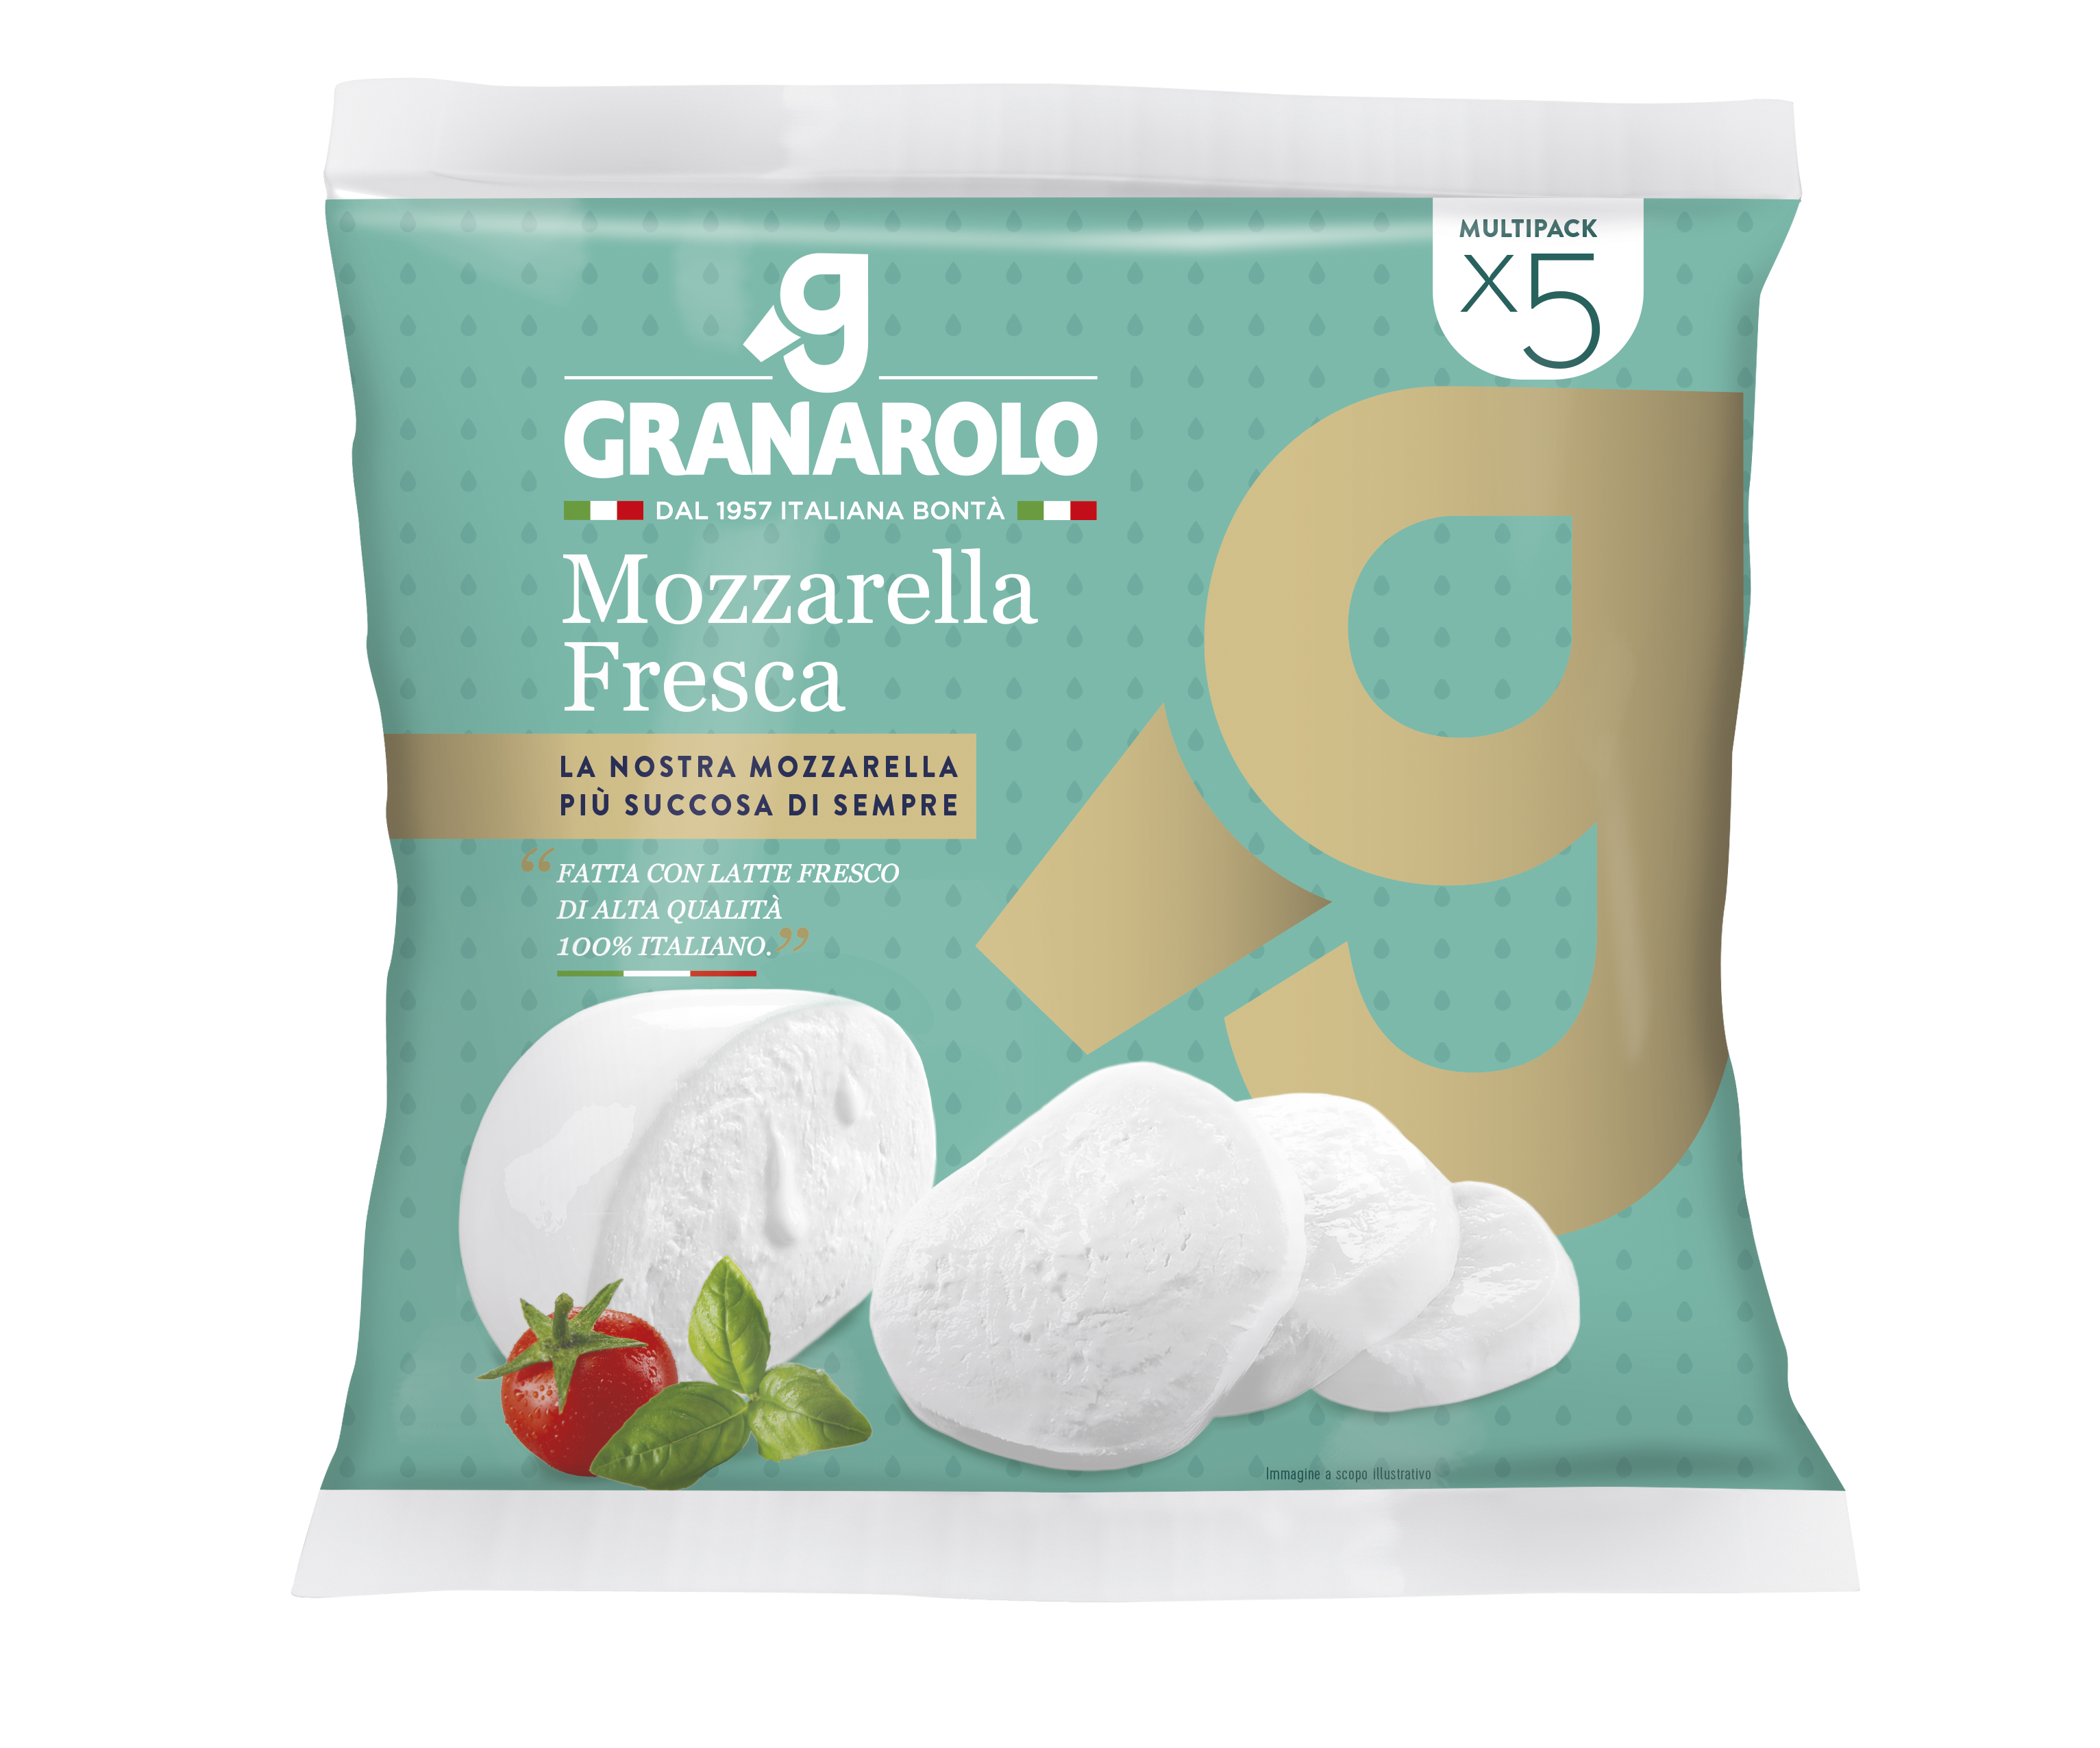 Mozzarella from made high quality fresh Granarolo S-P-00128 - milk